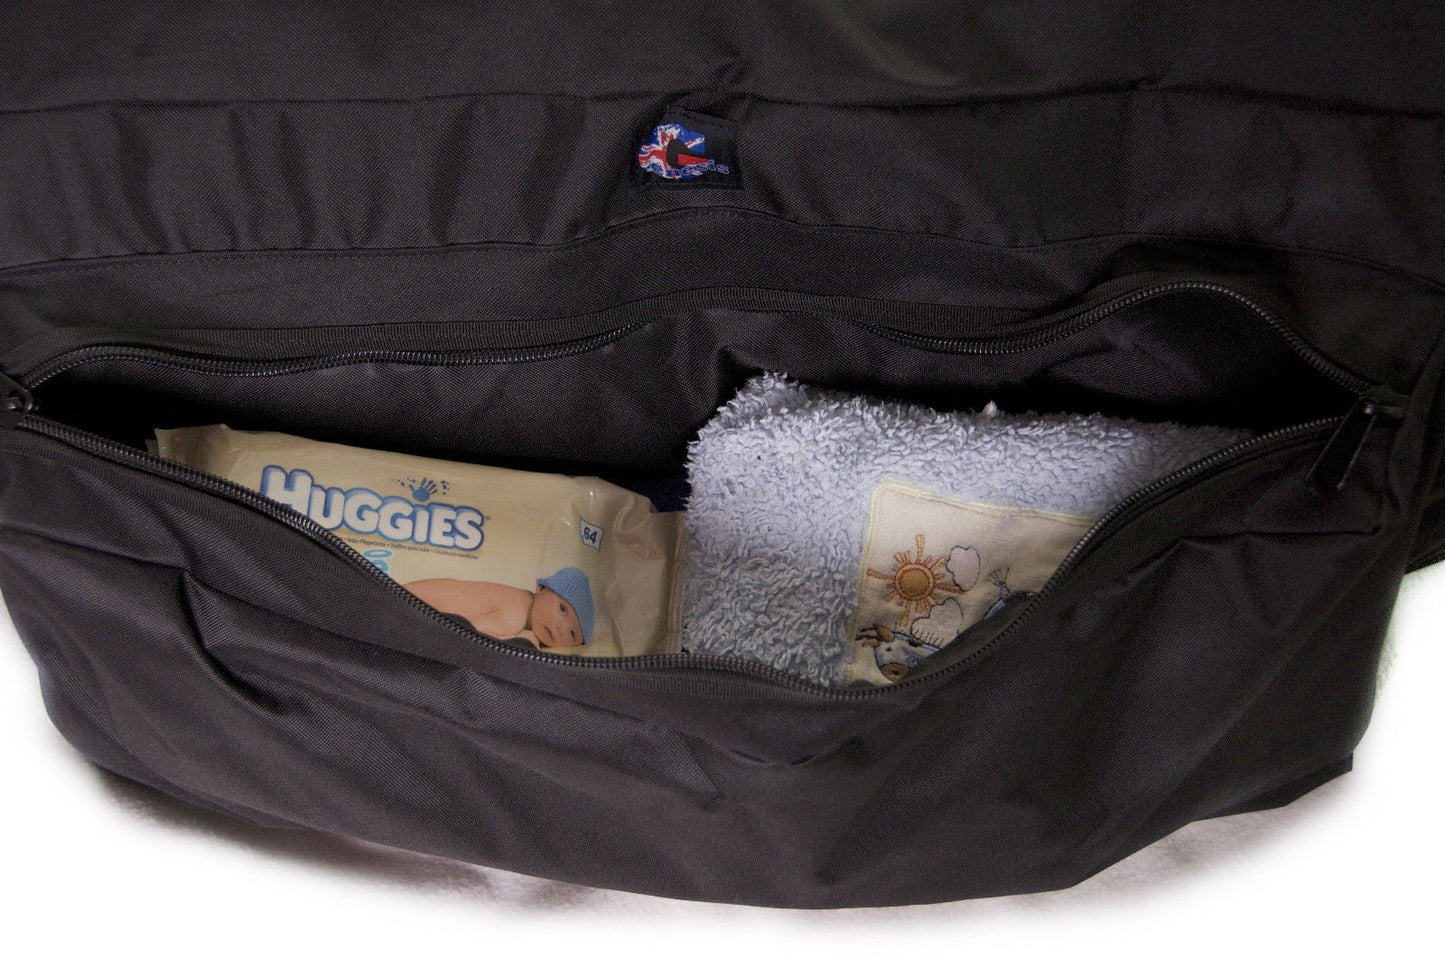 Genesis Bespoke Pushchair Travel Bags for air flights.